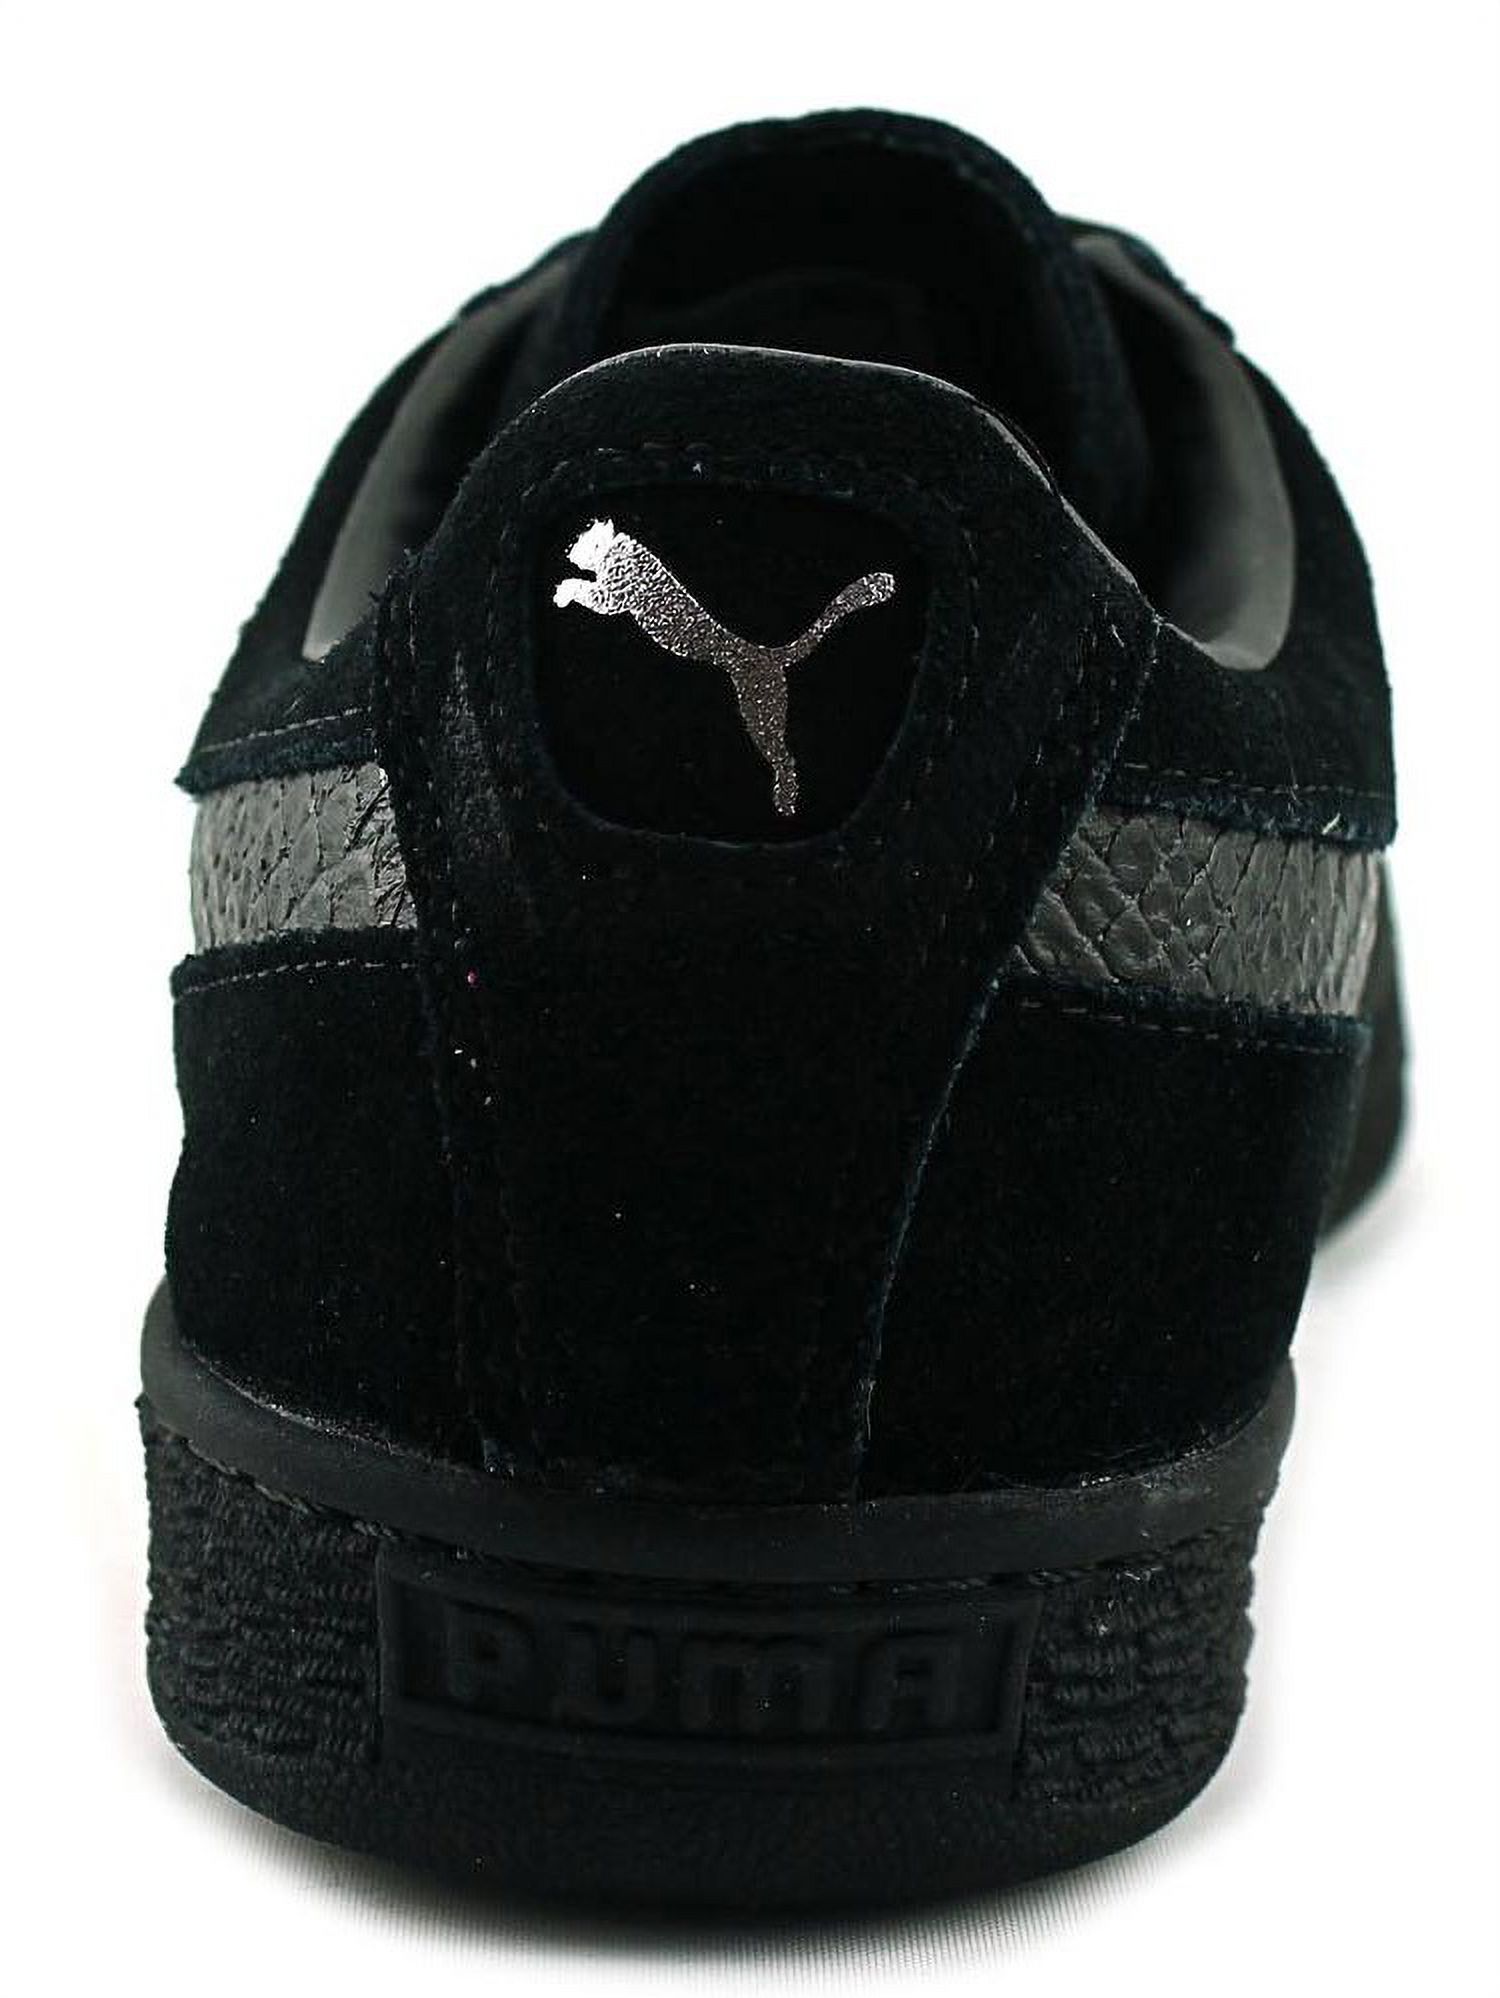 PUMA 363164-06 : Men's Suede Classic Mono Reptile Fashion Sneaker, Black (Puma Black-puma Silv, 9.5 D(M) US) - image 2 of 5